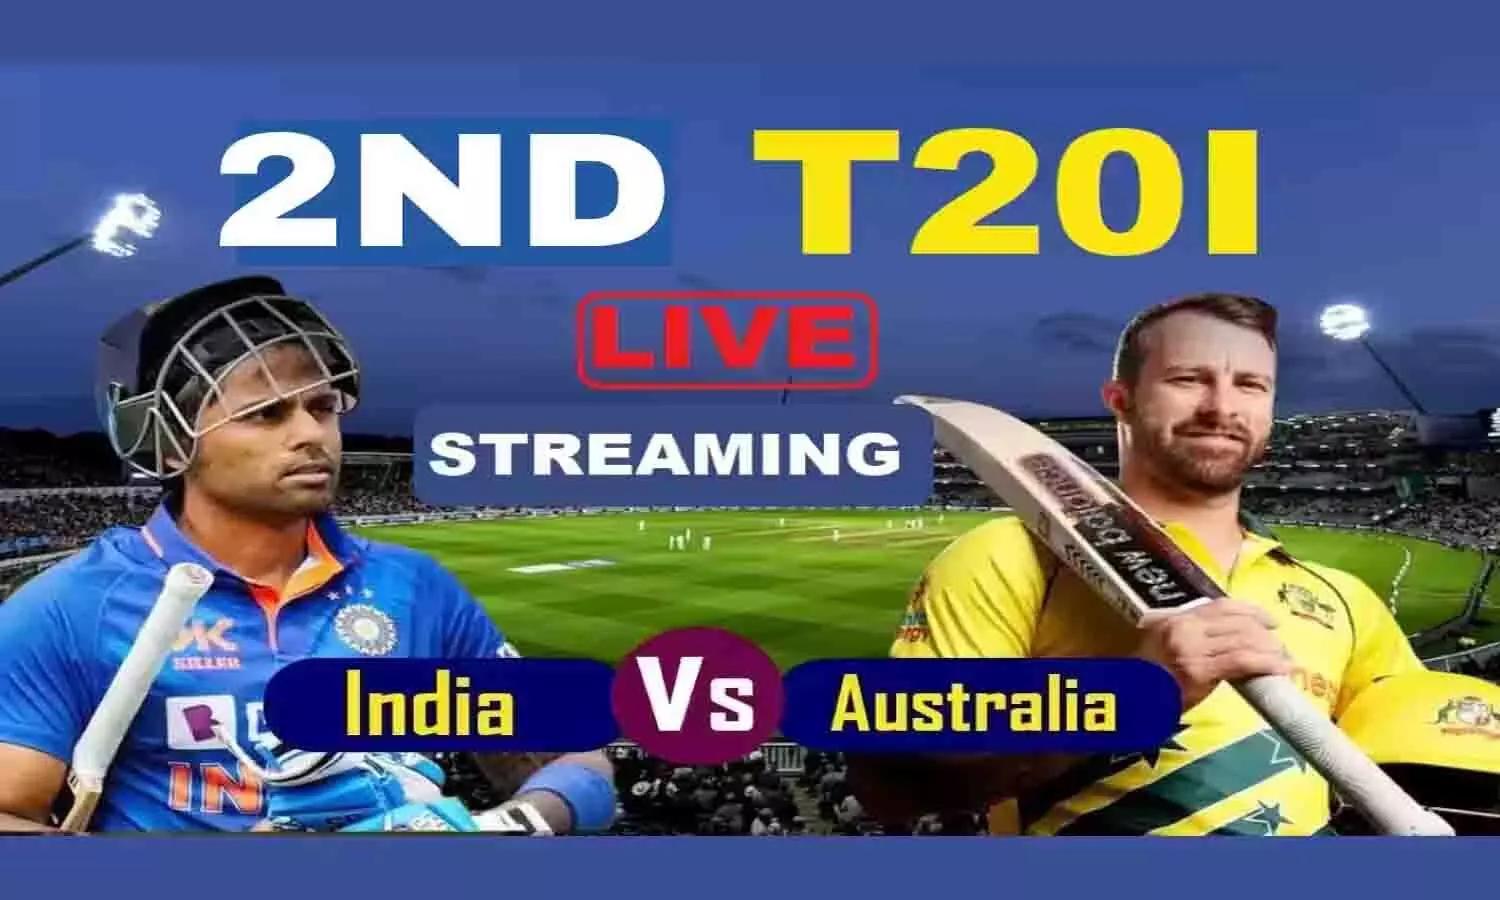 India Vs Australia Pitch Report: तिरुवनंतपुरम क्रिकेट स्टेडियम पिच रिपोर्ट